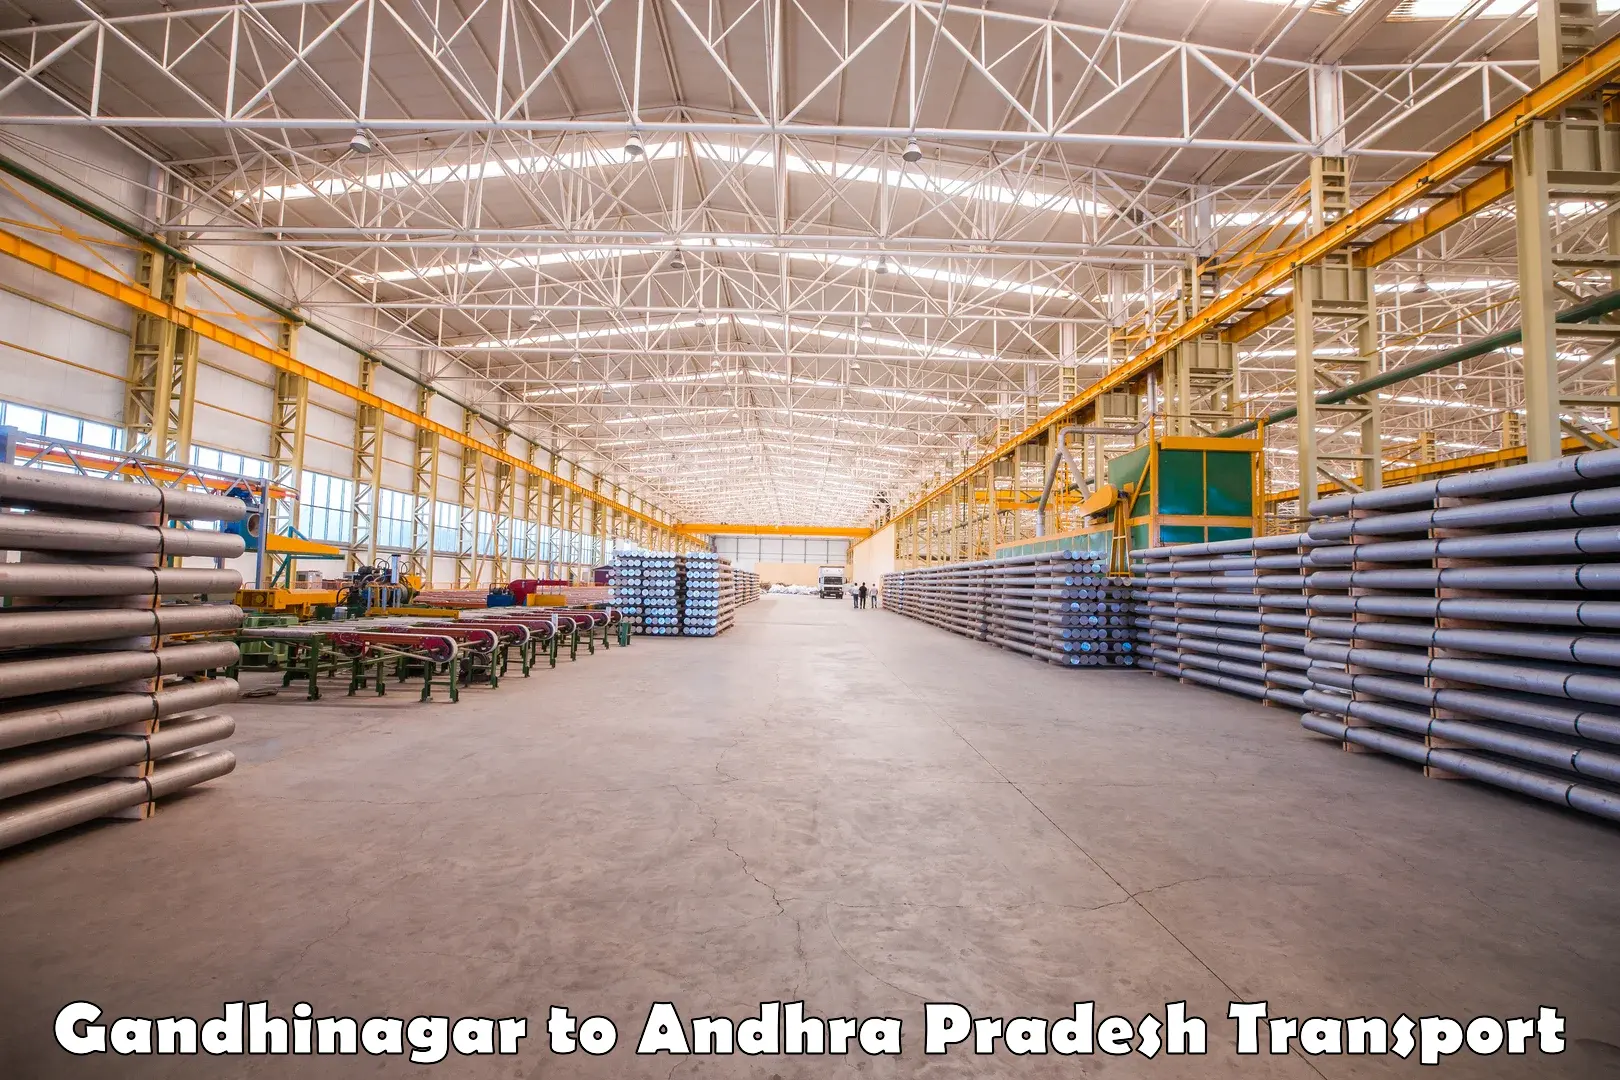 Furniture transport service Gandhinagar to Pamarru